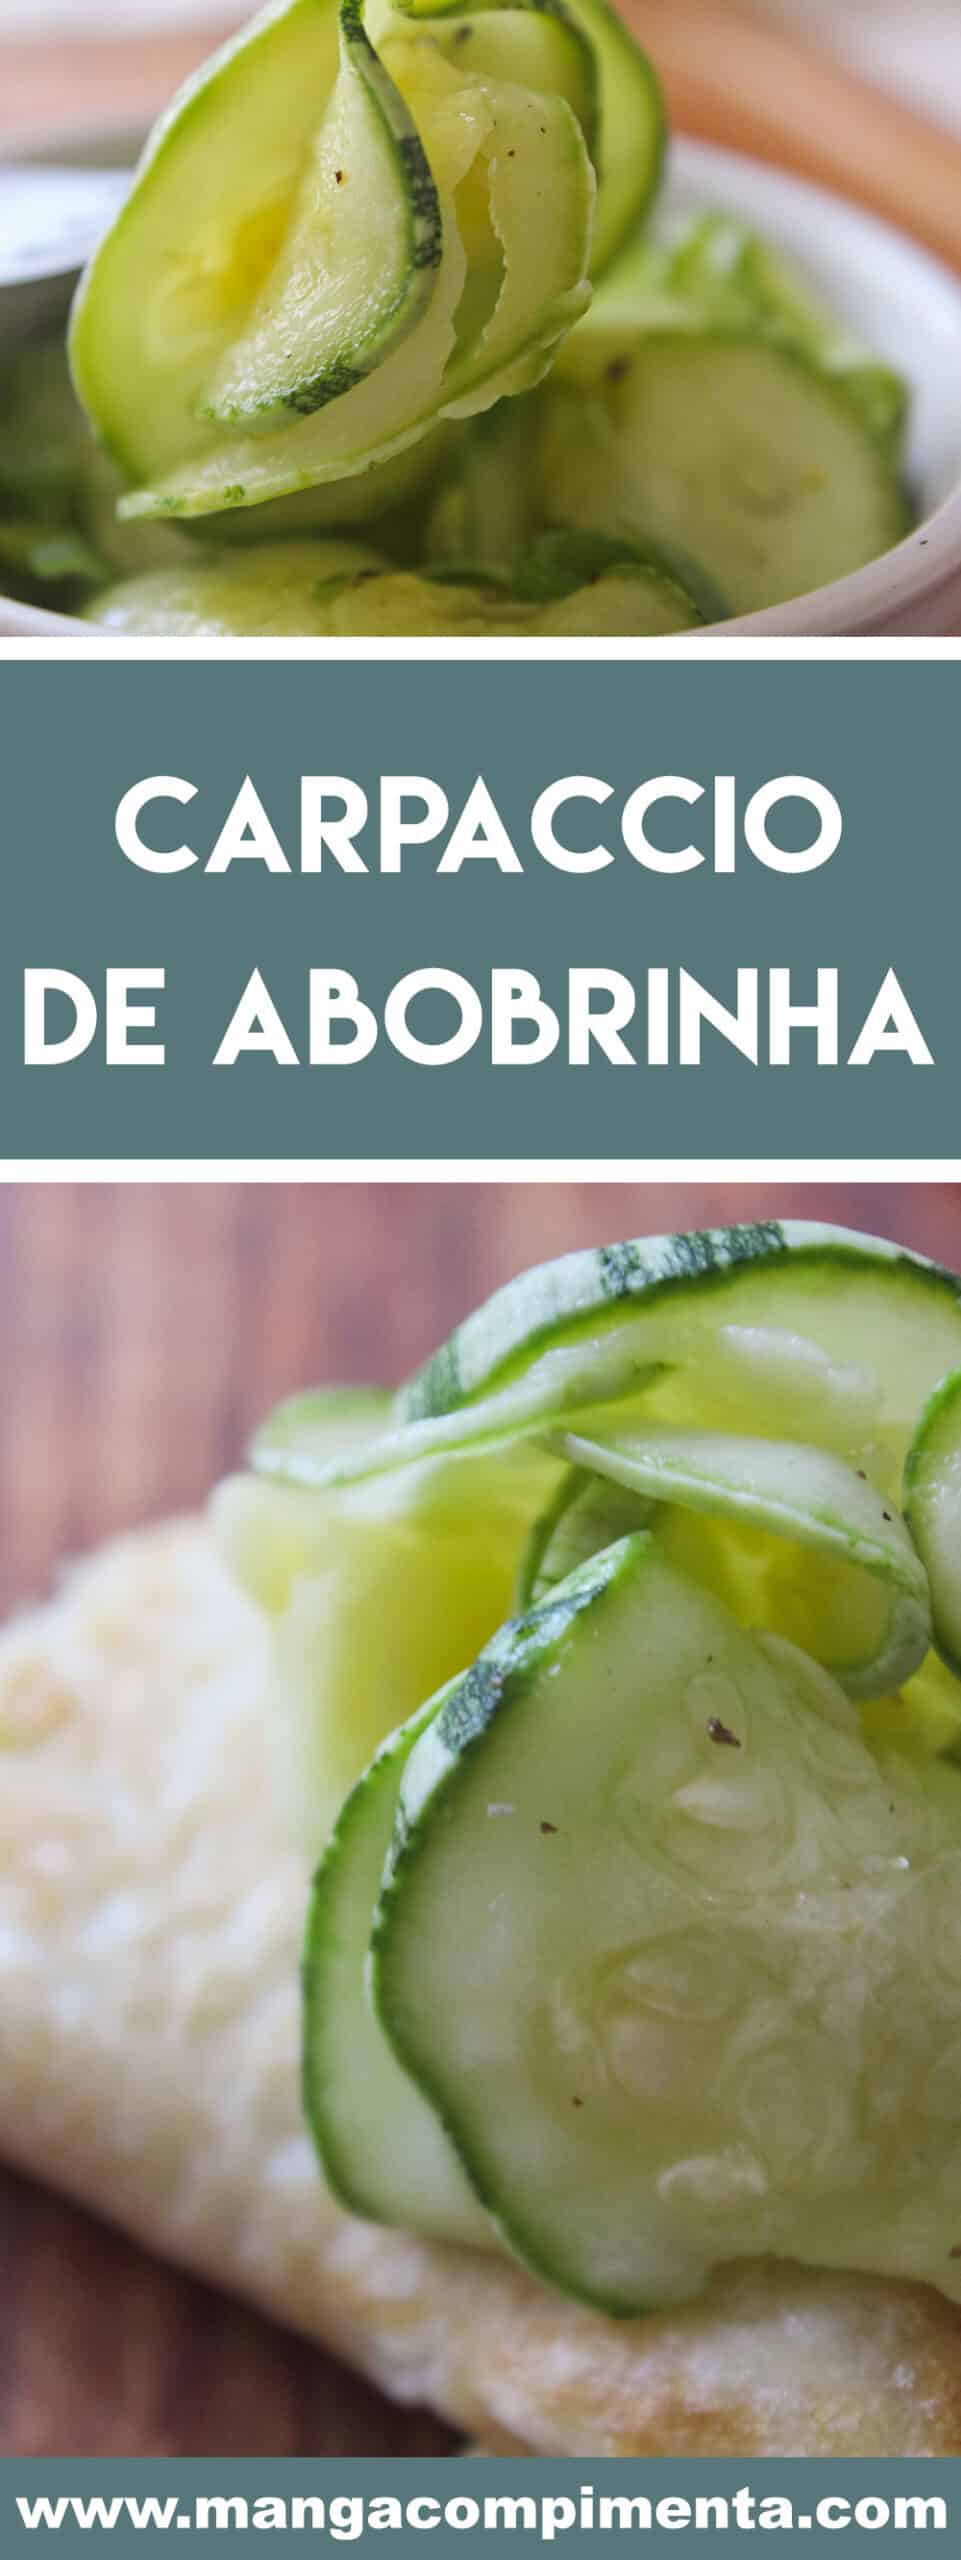 Receita de Carpaccio de Abobrinha - prepare em casa para petiscar, lanchar ou servir junto com a salada nas refeições da família. 